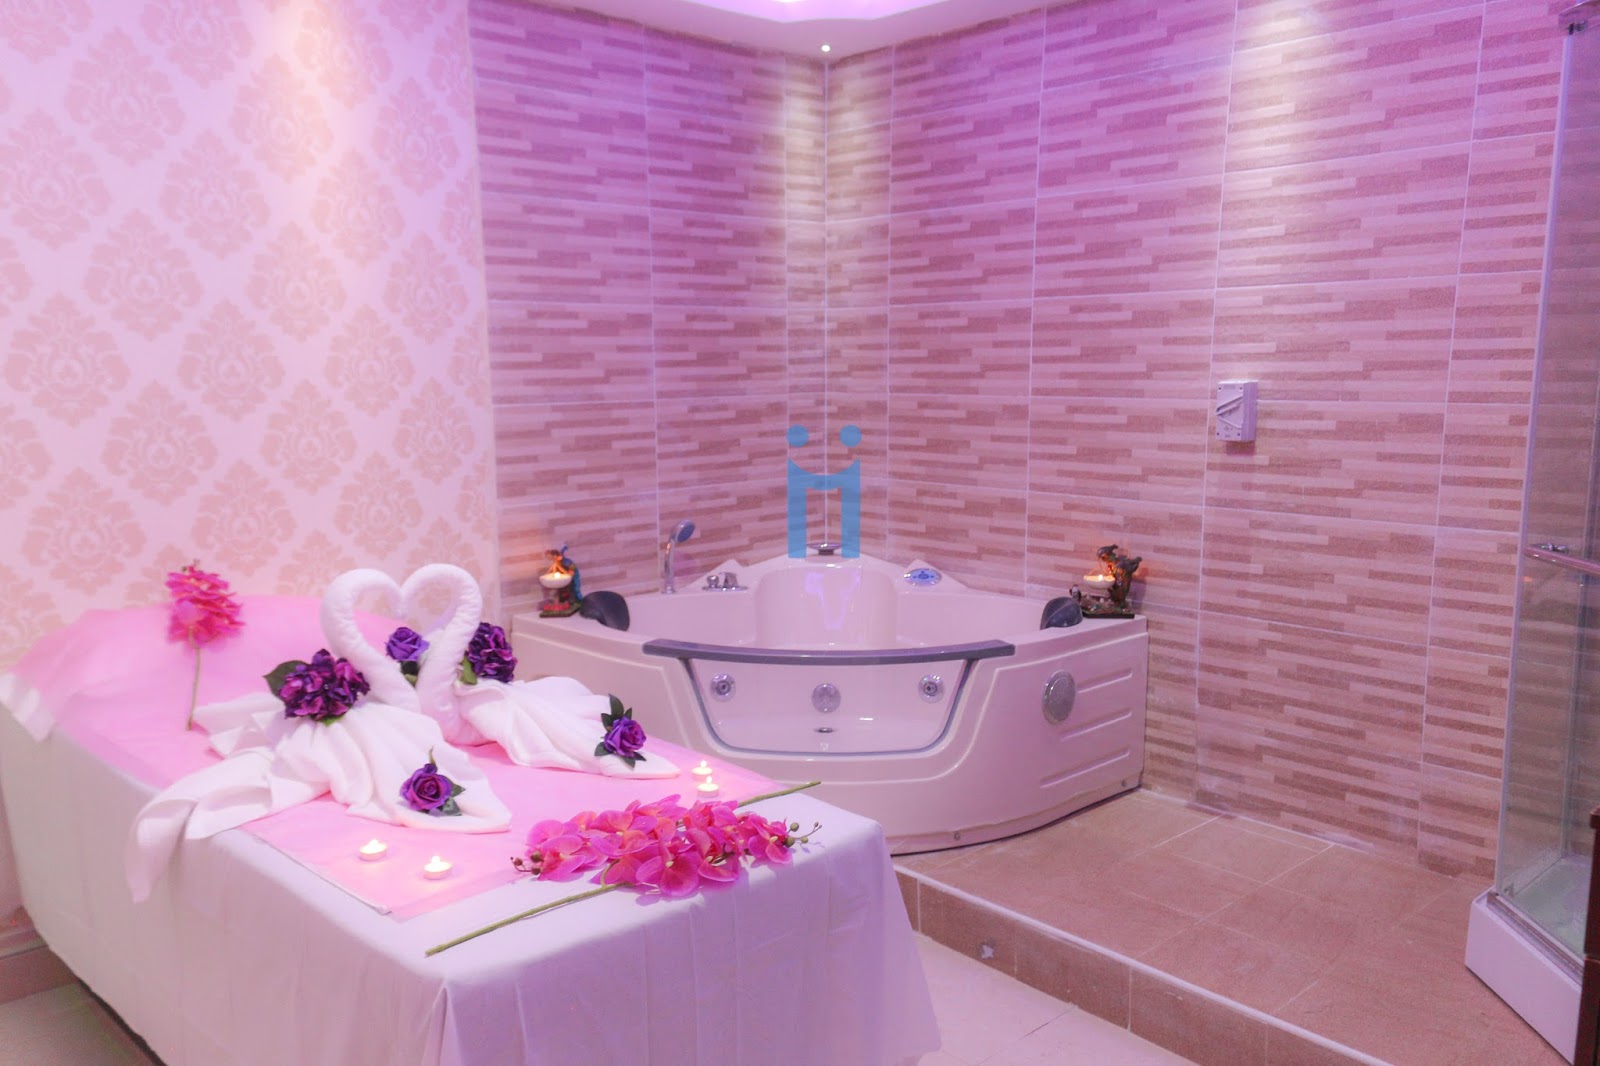 Lavender Al Barsha Massage In Dubai 0525718397